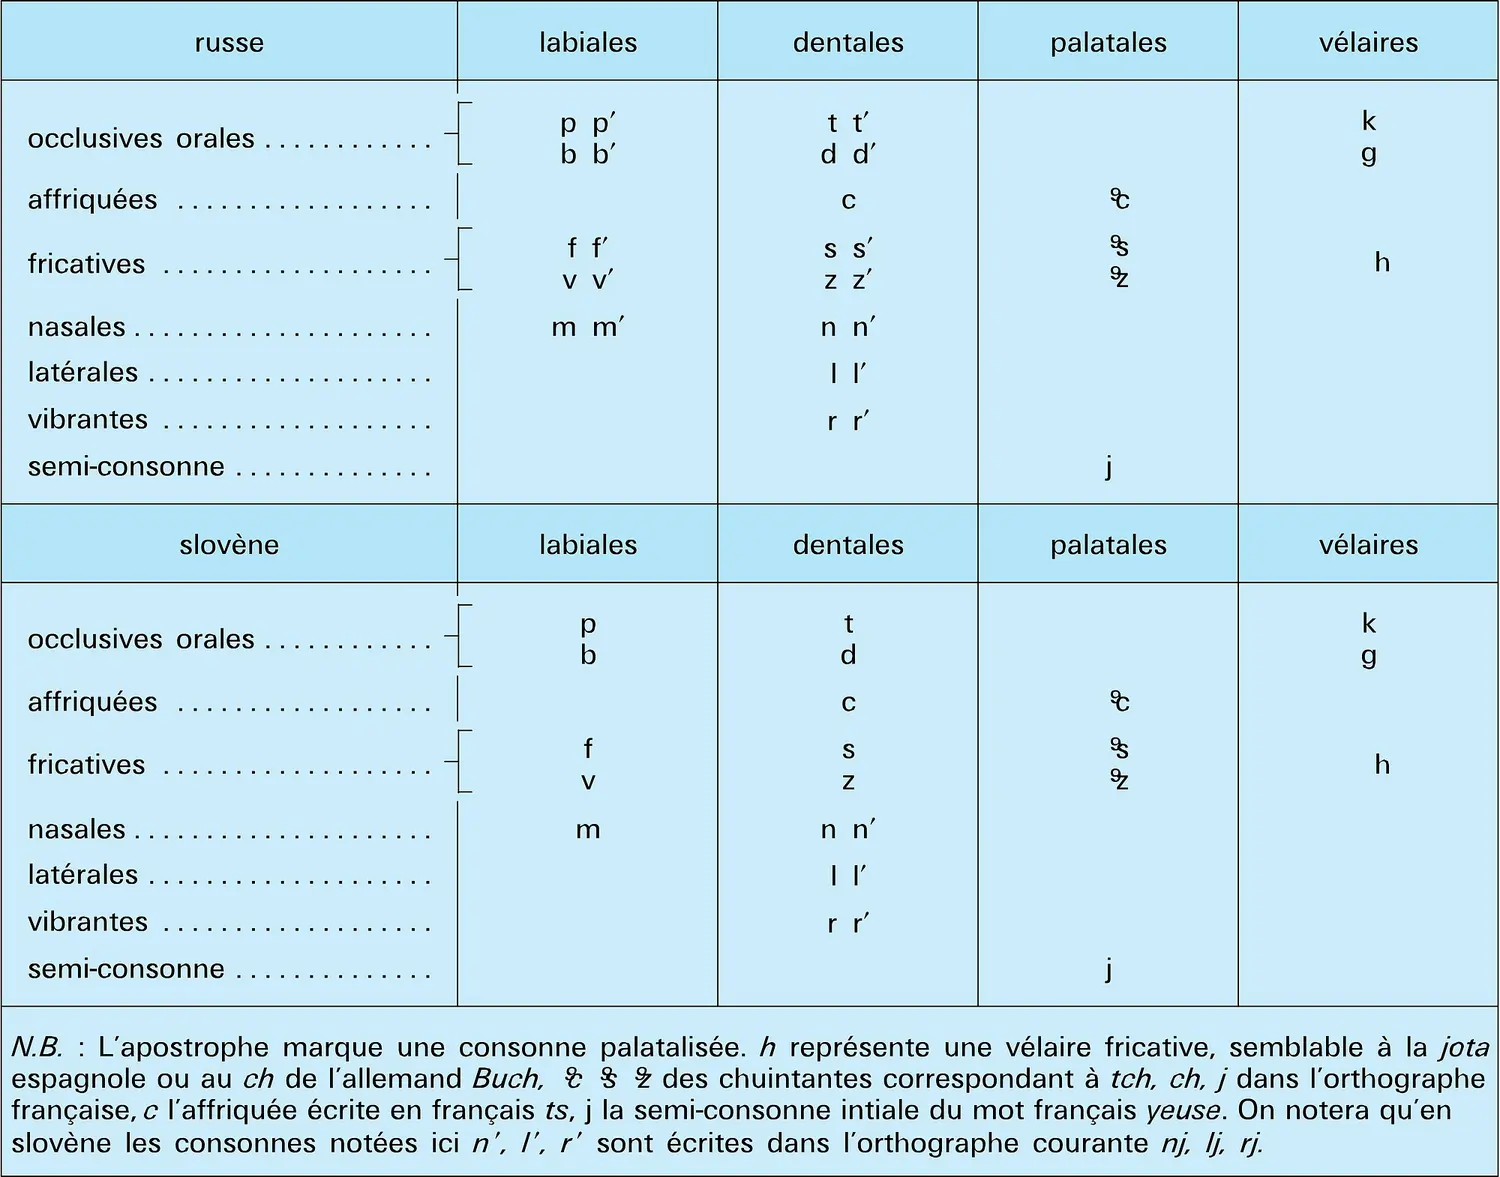 Systèmes consonantiques du russe et du slovène